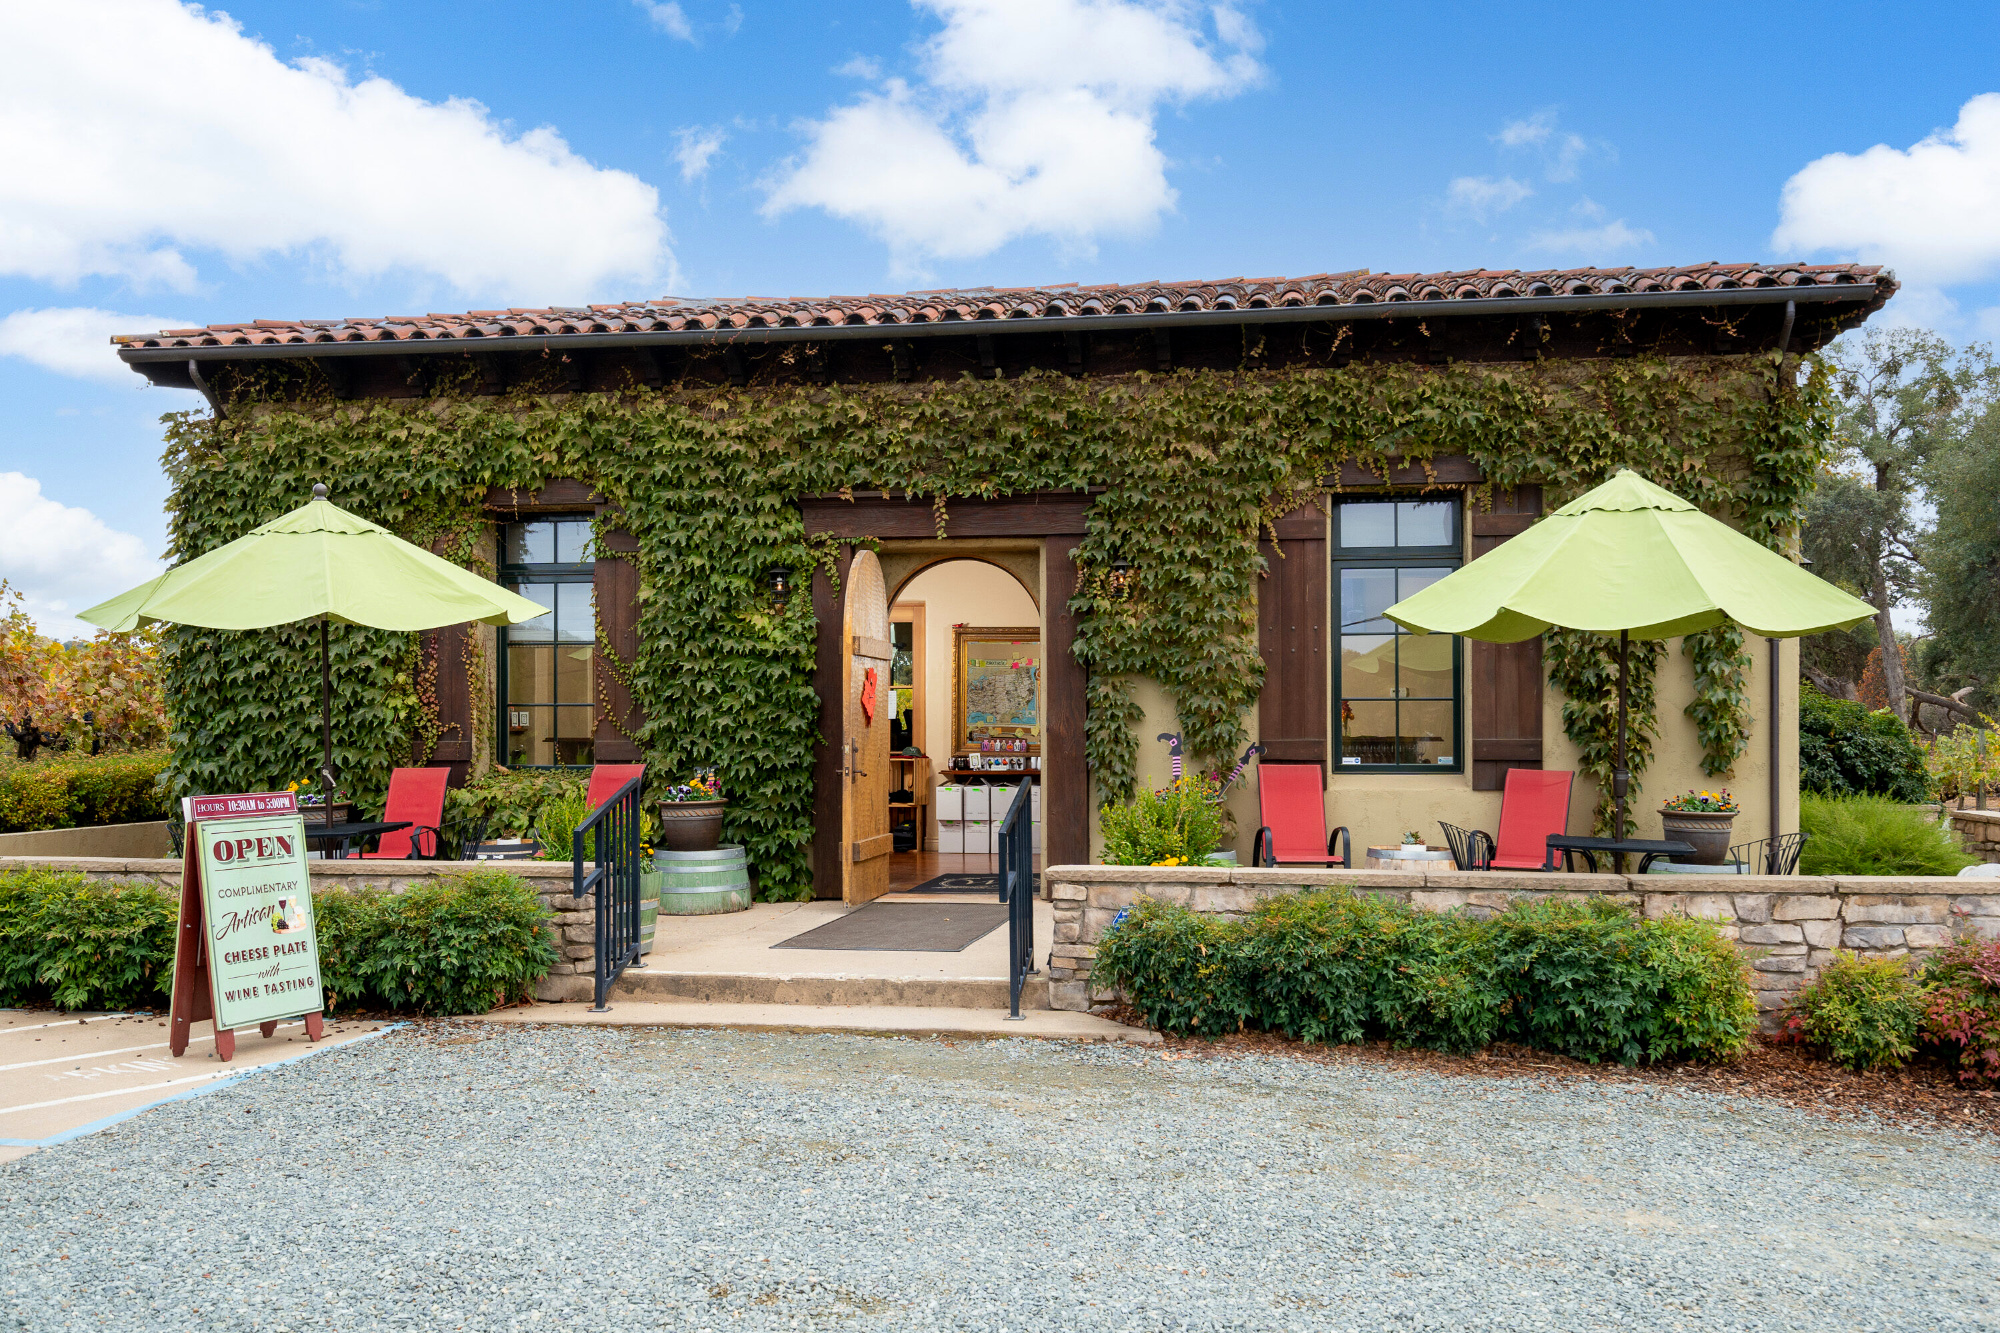 Luxury Inn, Tasting Room, Winery and Vineyard